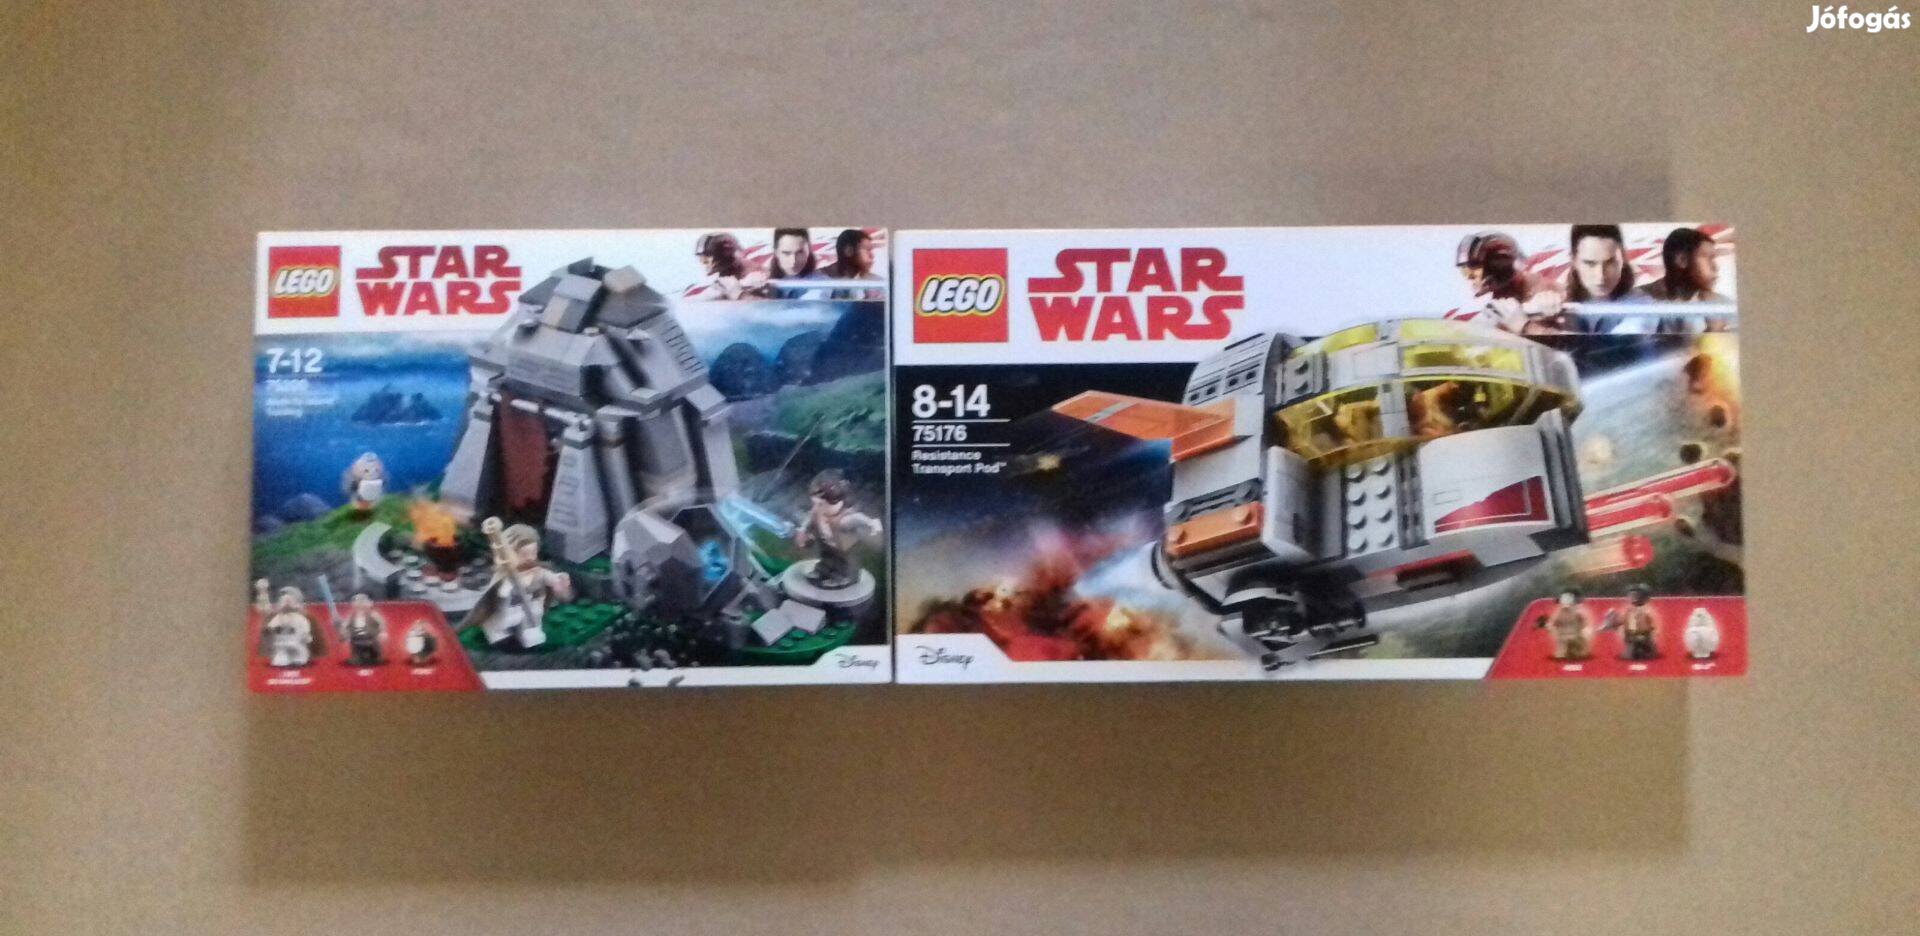 Utolsó Jedik bontatlan Star Wars LEGO 75176 + 75200 Tréning Fox.azárba